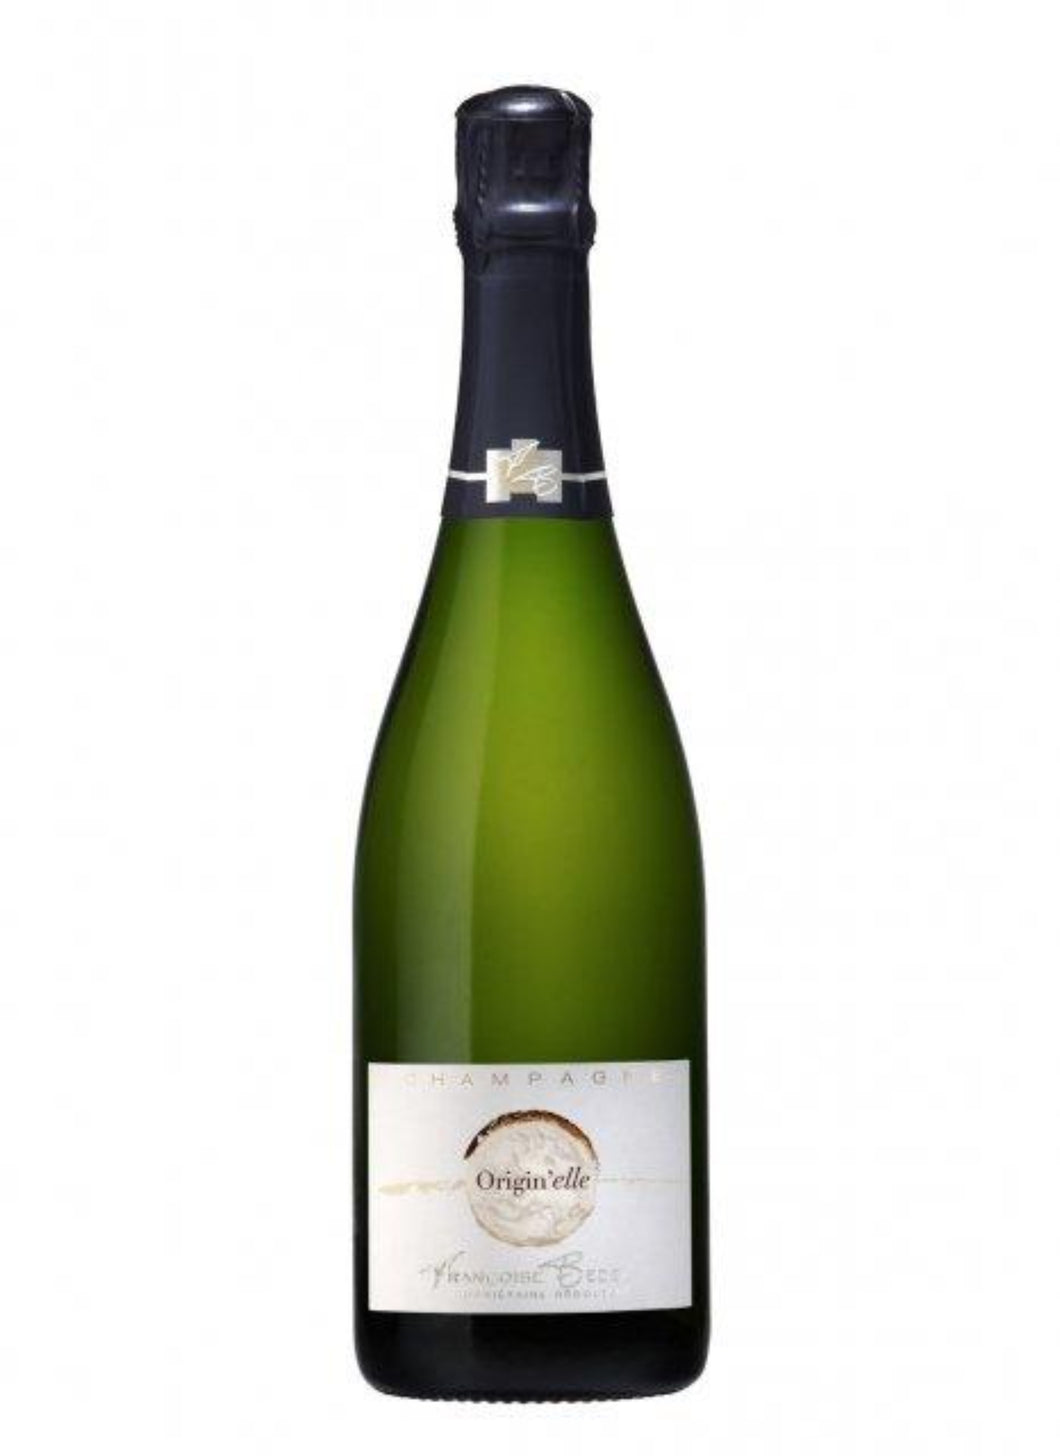 Voici notre Champagne de chez Françoise Bedel nommé Origin'elle.